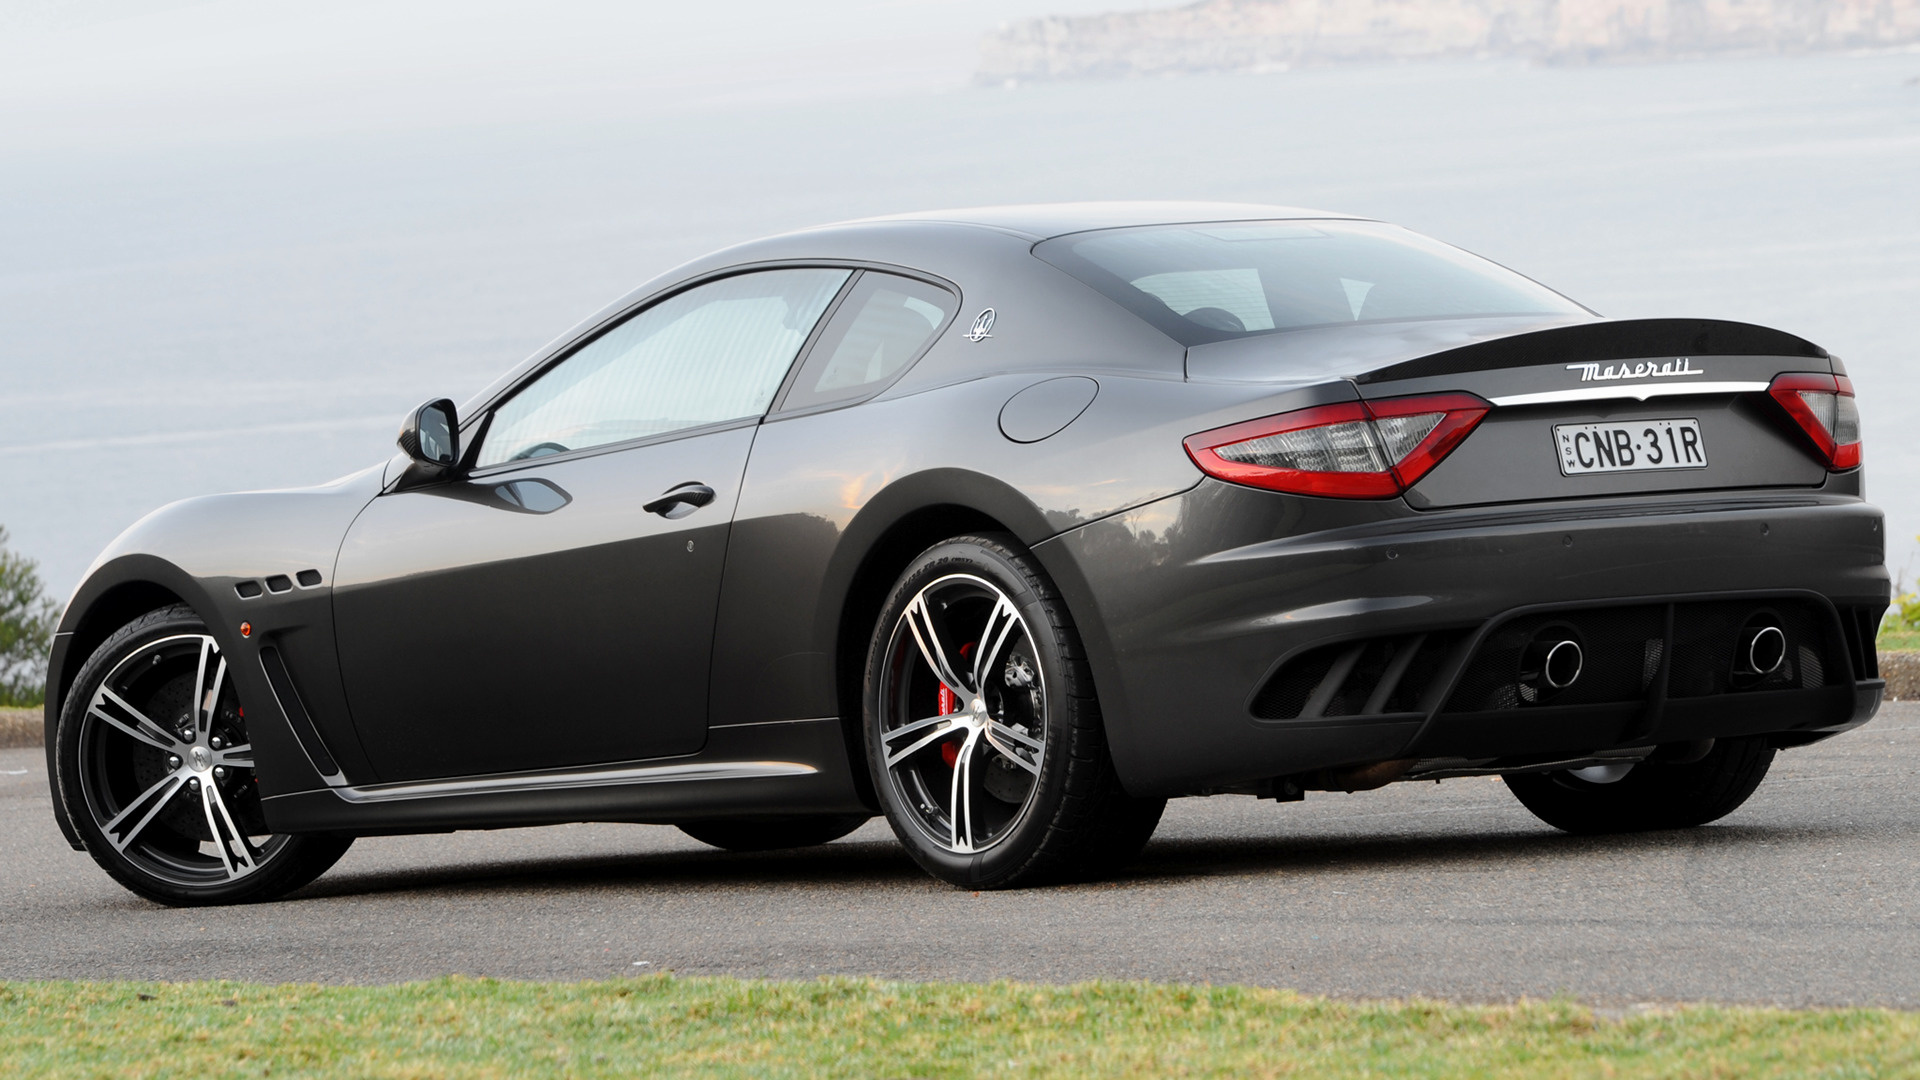 Descarga gratuita de fondo de pantalla para móvil de Maserati, Coche, Gran Turismo, Vehículos, Coche Negro, Maserati Gran Turismo, Maserati Granturismo Mc Stradale.